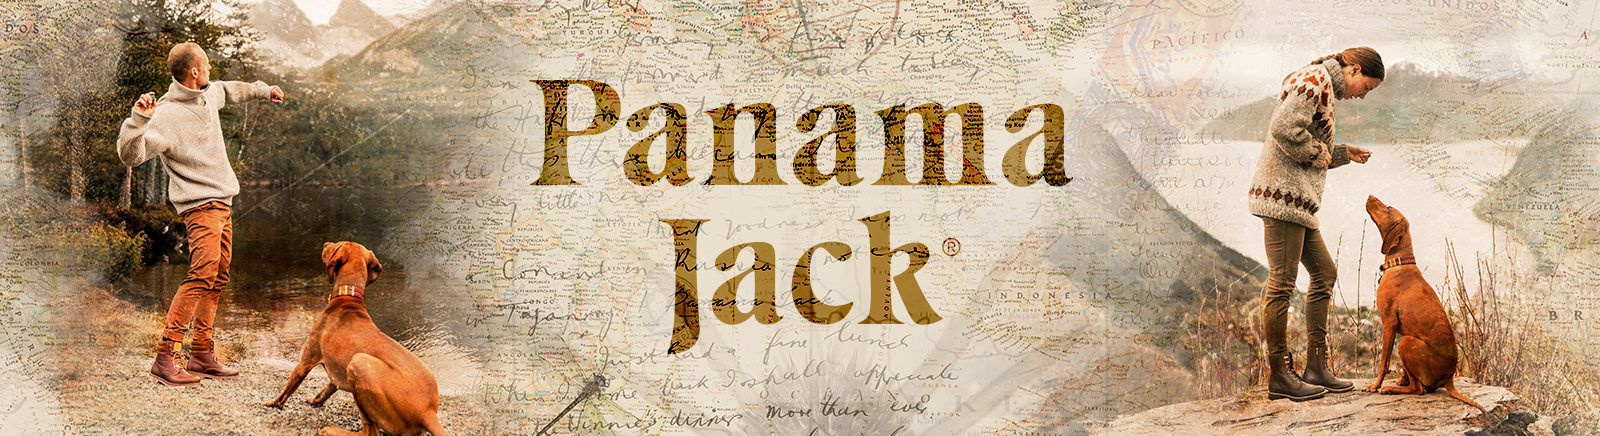 Juppen: Panama Jack Sandalen für Herren online shoppen